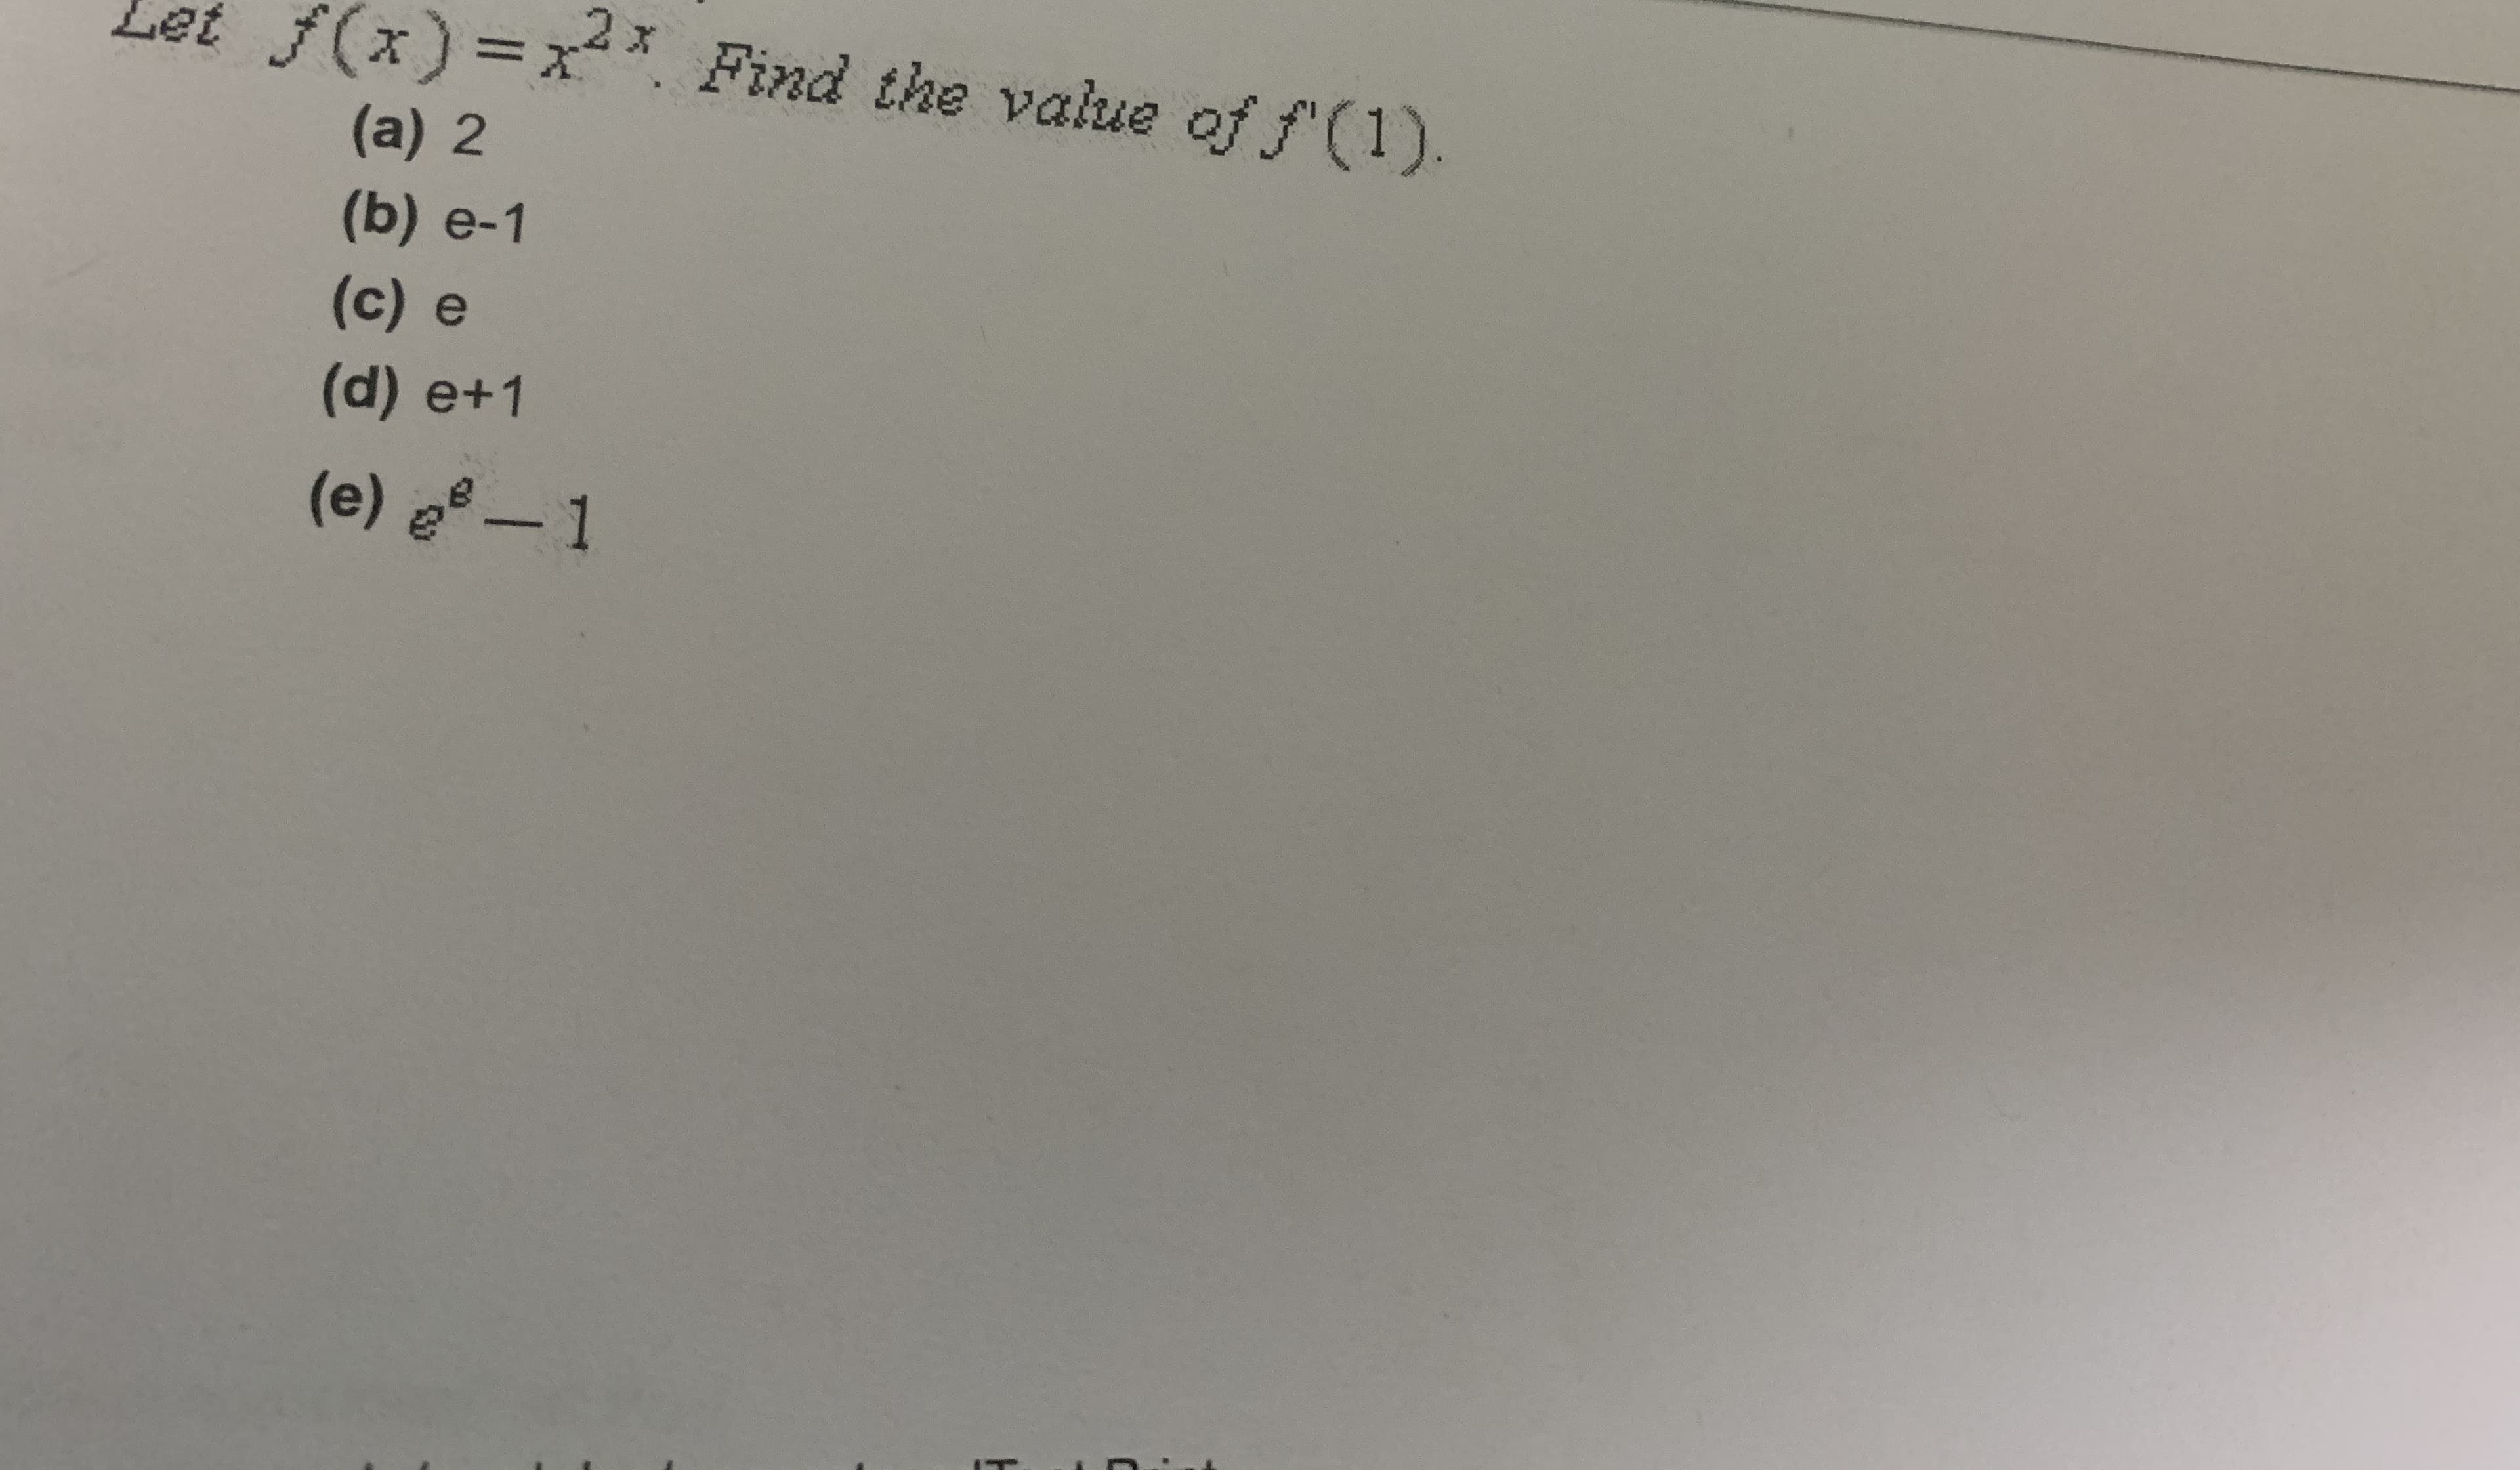 Let
f(x)%3x* Find the value of f'(1).
(a) 2
(b) e-1
(c) e
(d) e+1
(e) -1
